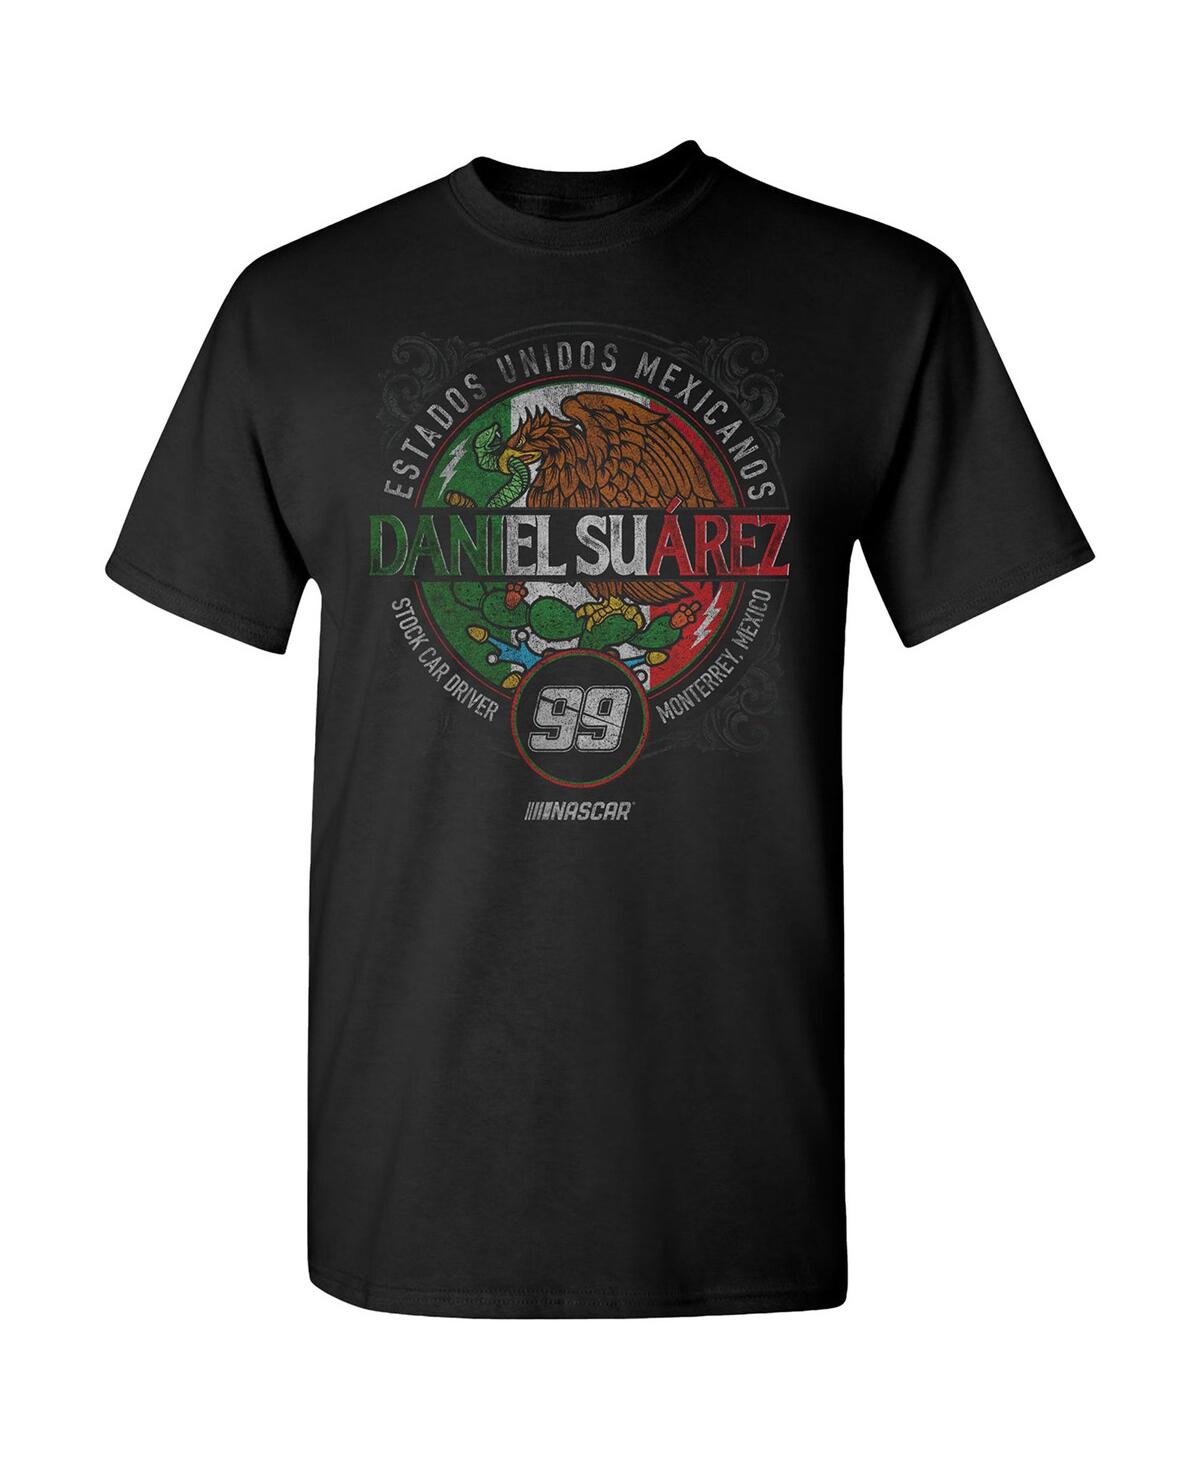 Shop Trackhouse Racing Team Collection Men's  Black Daniel Suarez Pancho T-shirt